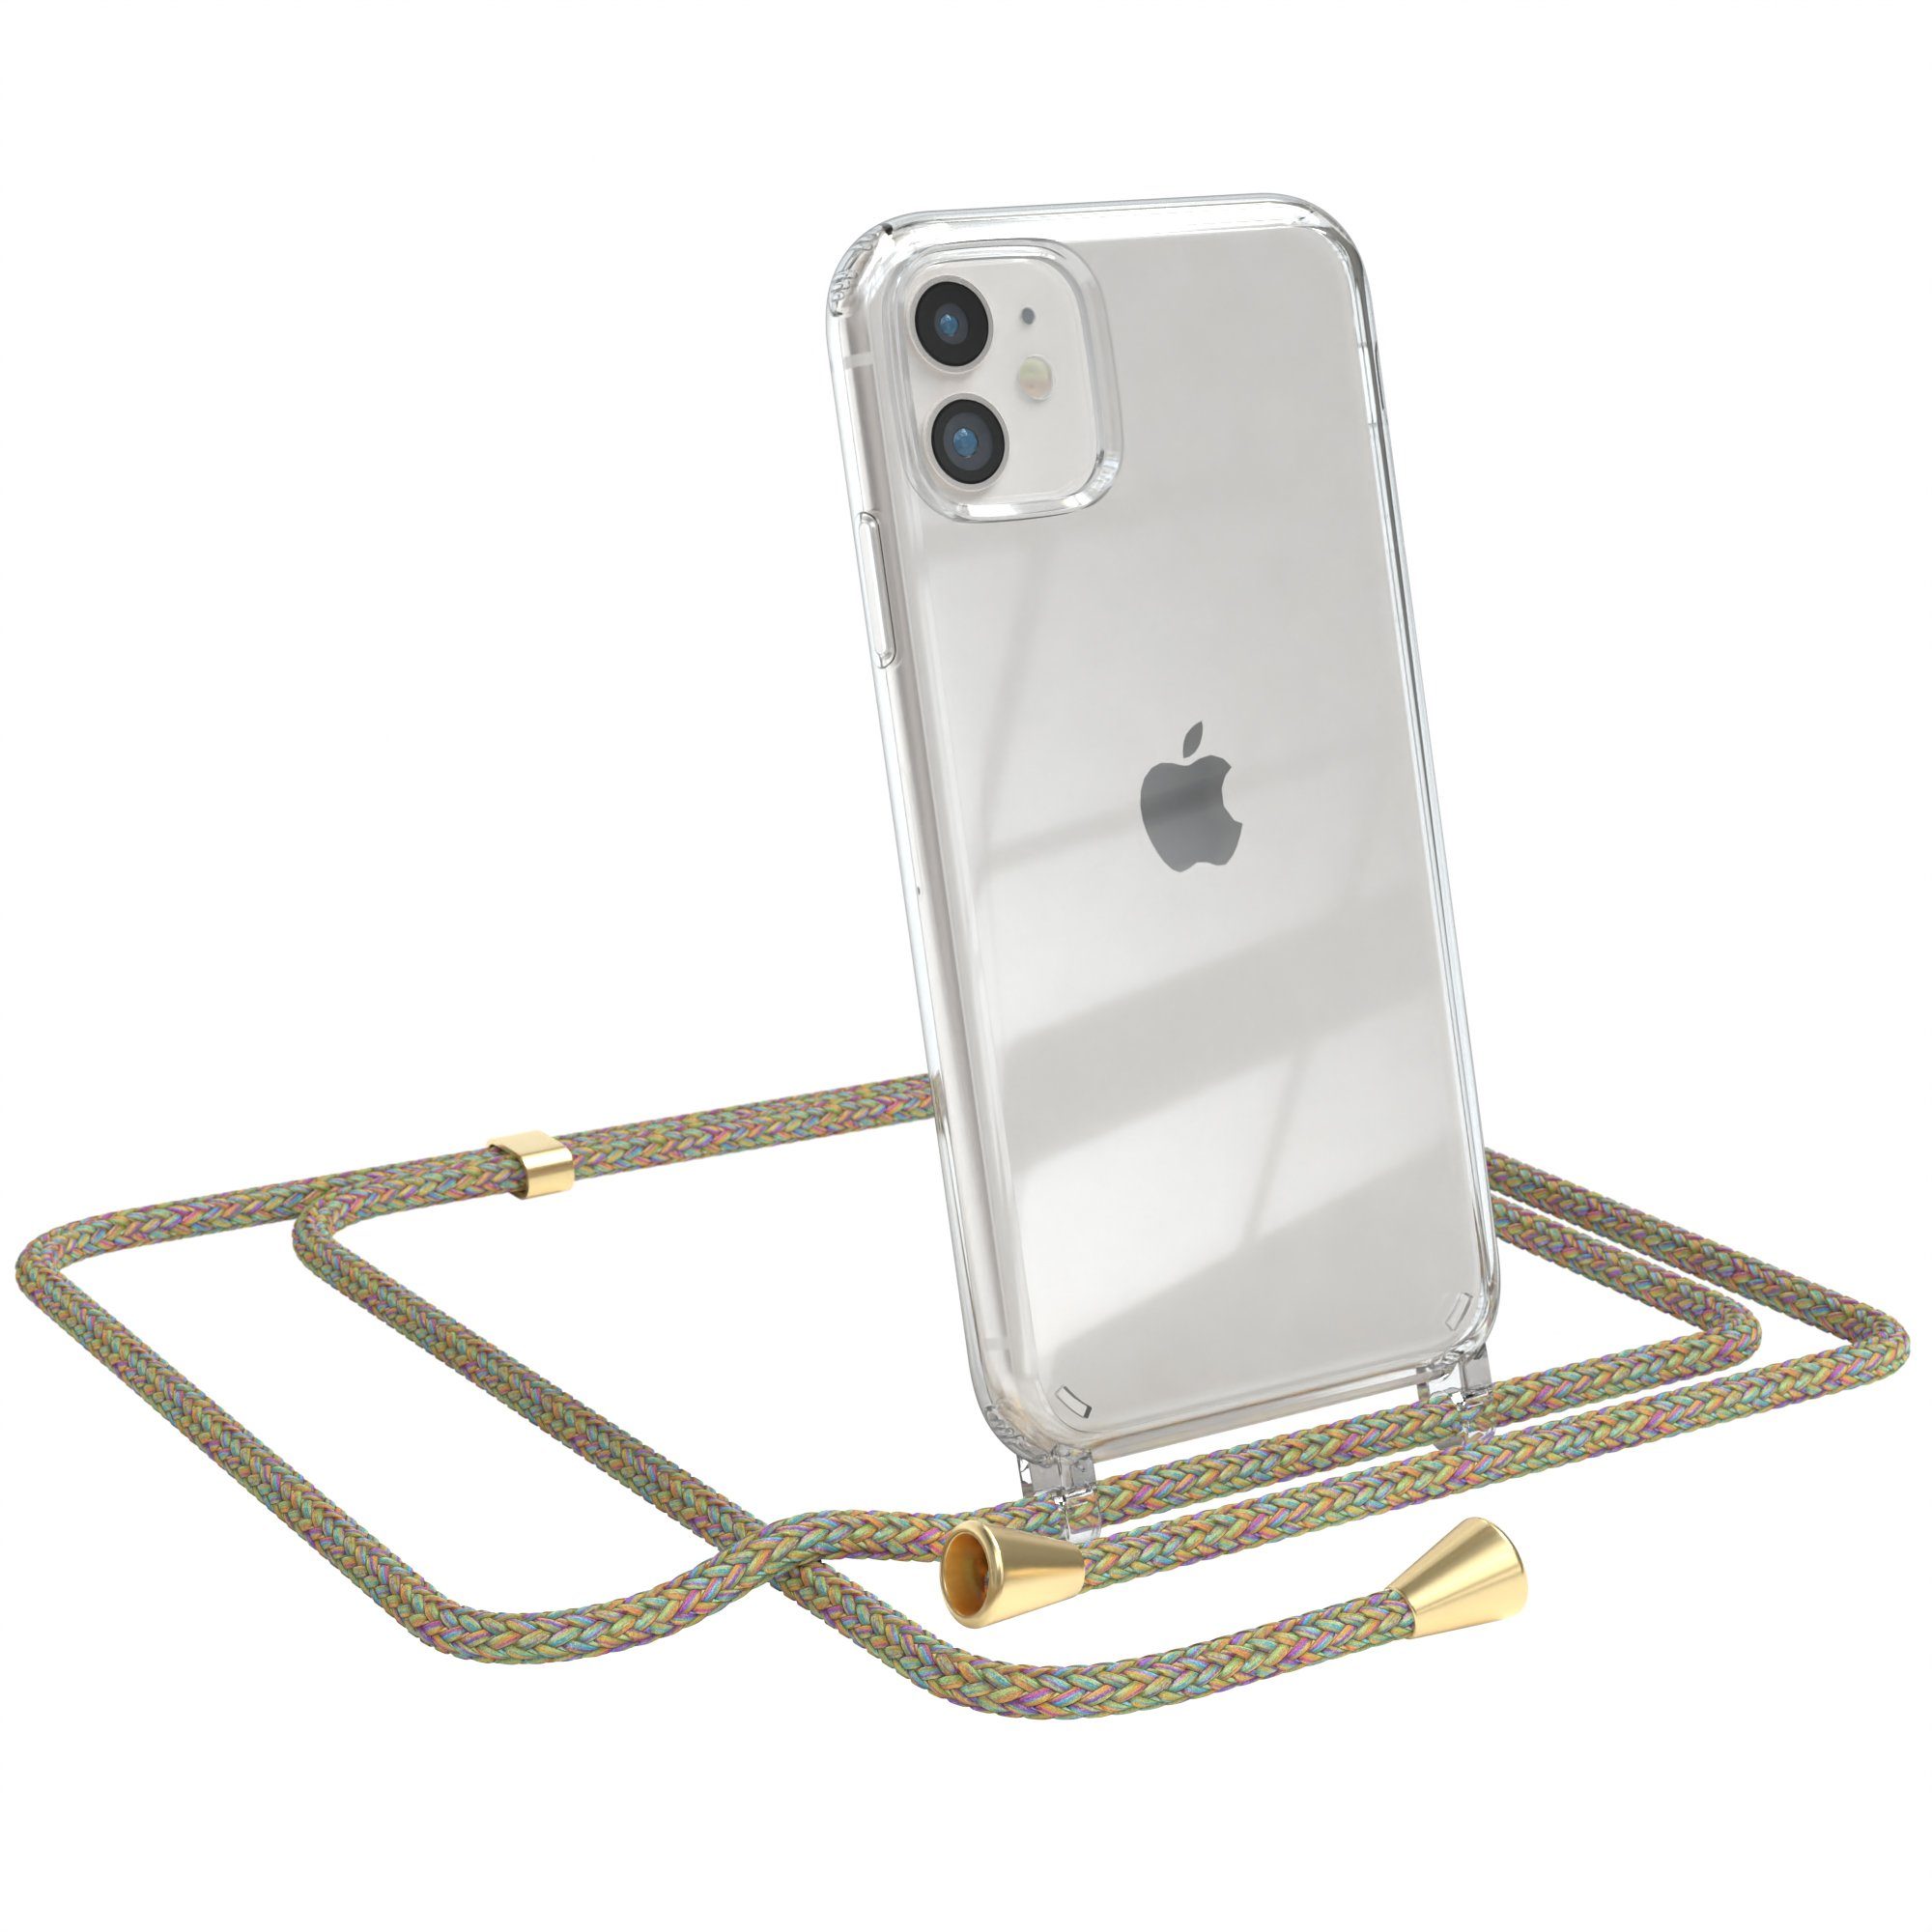 EAZY CASE Handykette Hülle mit Kette für Apple iPhone 11 6,1 Zoll, Ketten Hülle Schultergurt Schutz Hülle Tasche mit Band Bunt Clip Gold